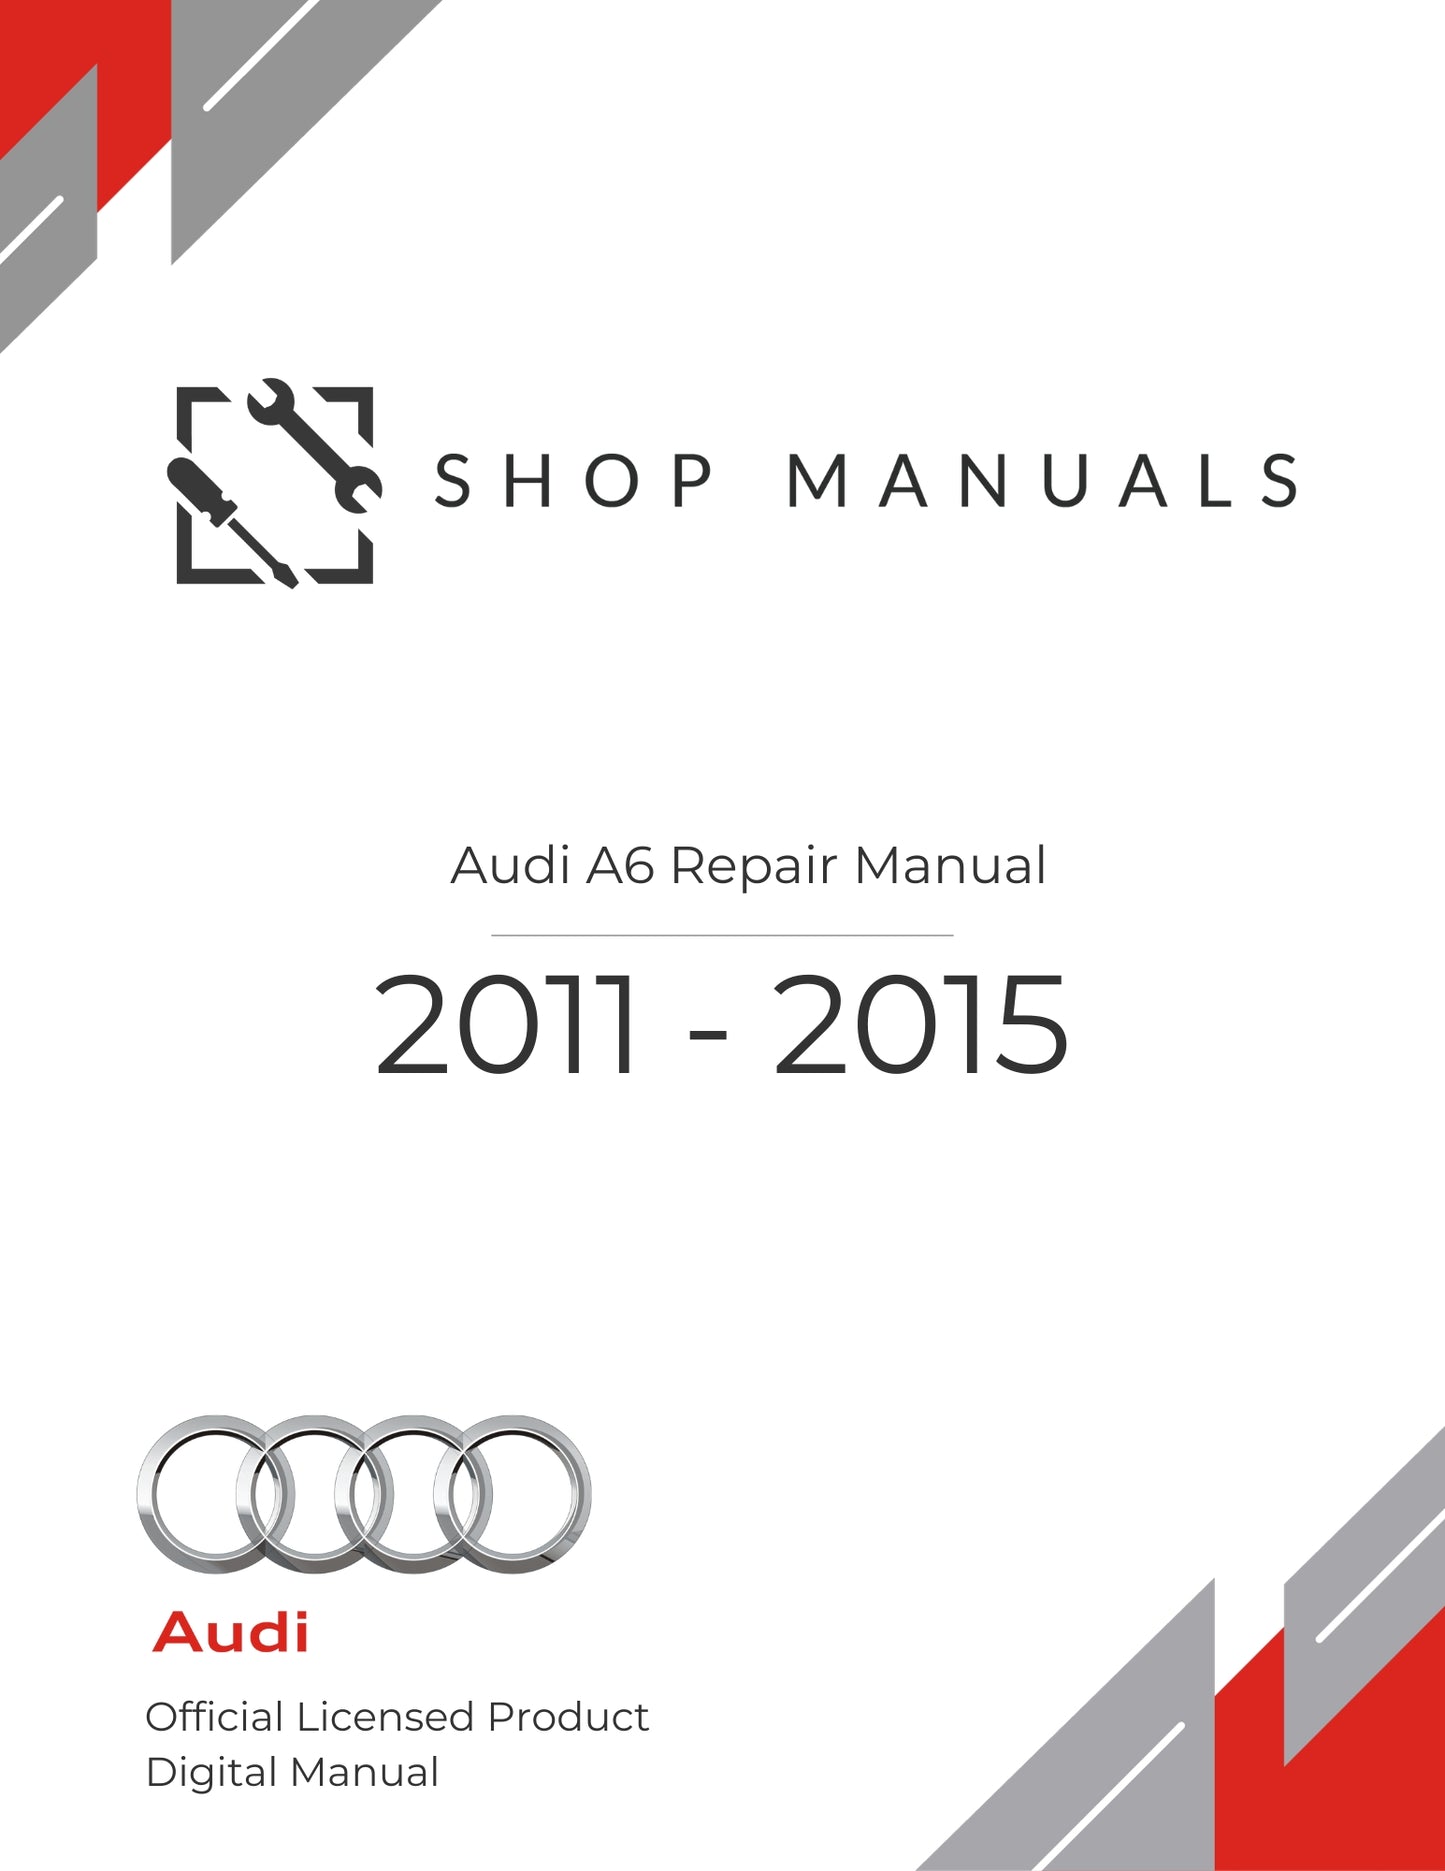 2011 - 2015 Audi A6 Repair Manual